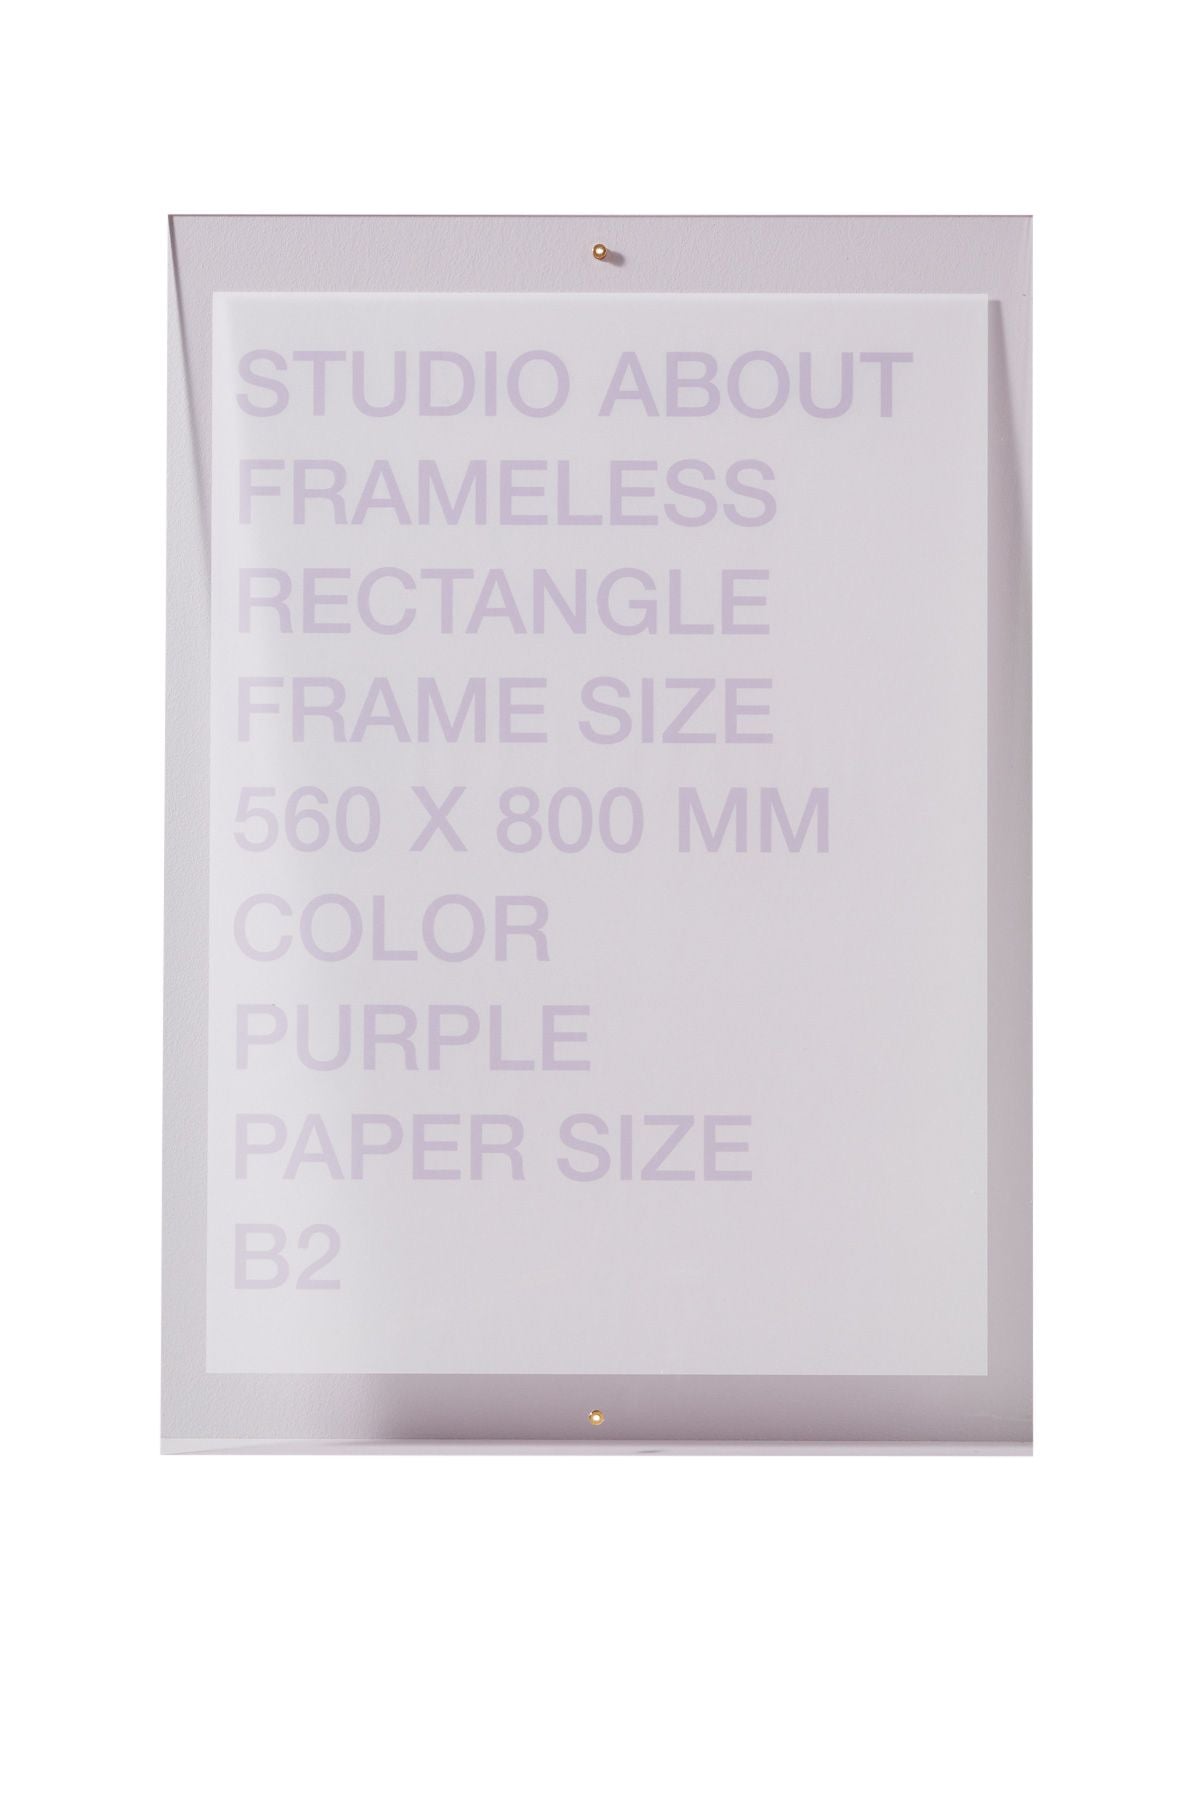 Studio sur le cadre sans cadre b2 rectangle, violet